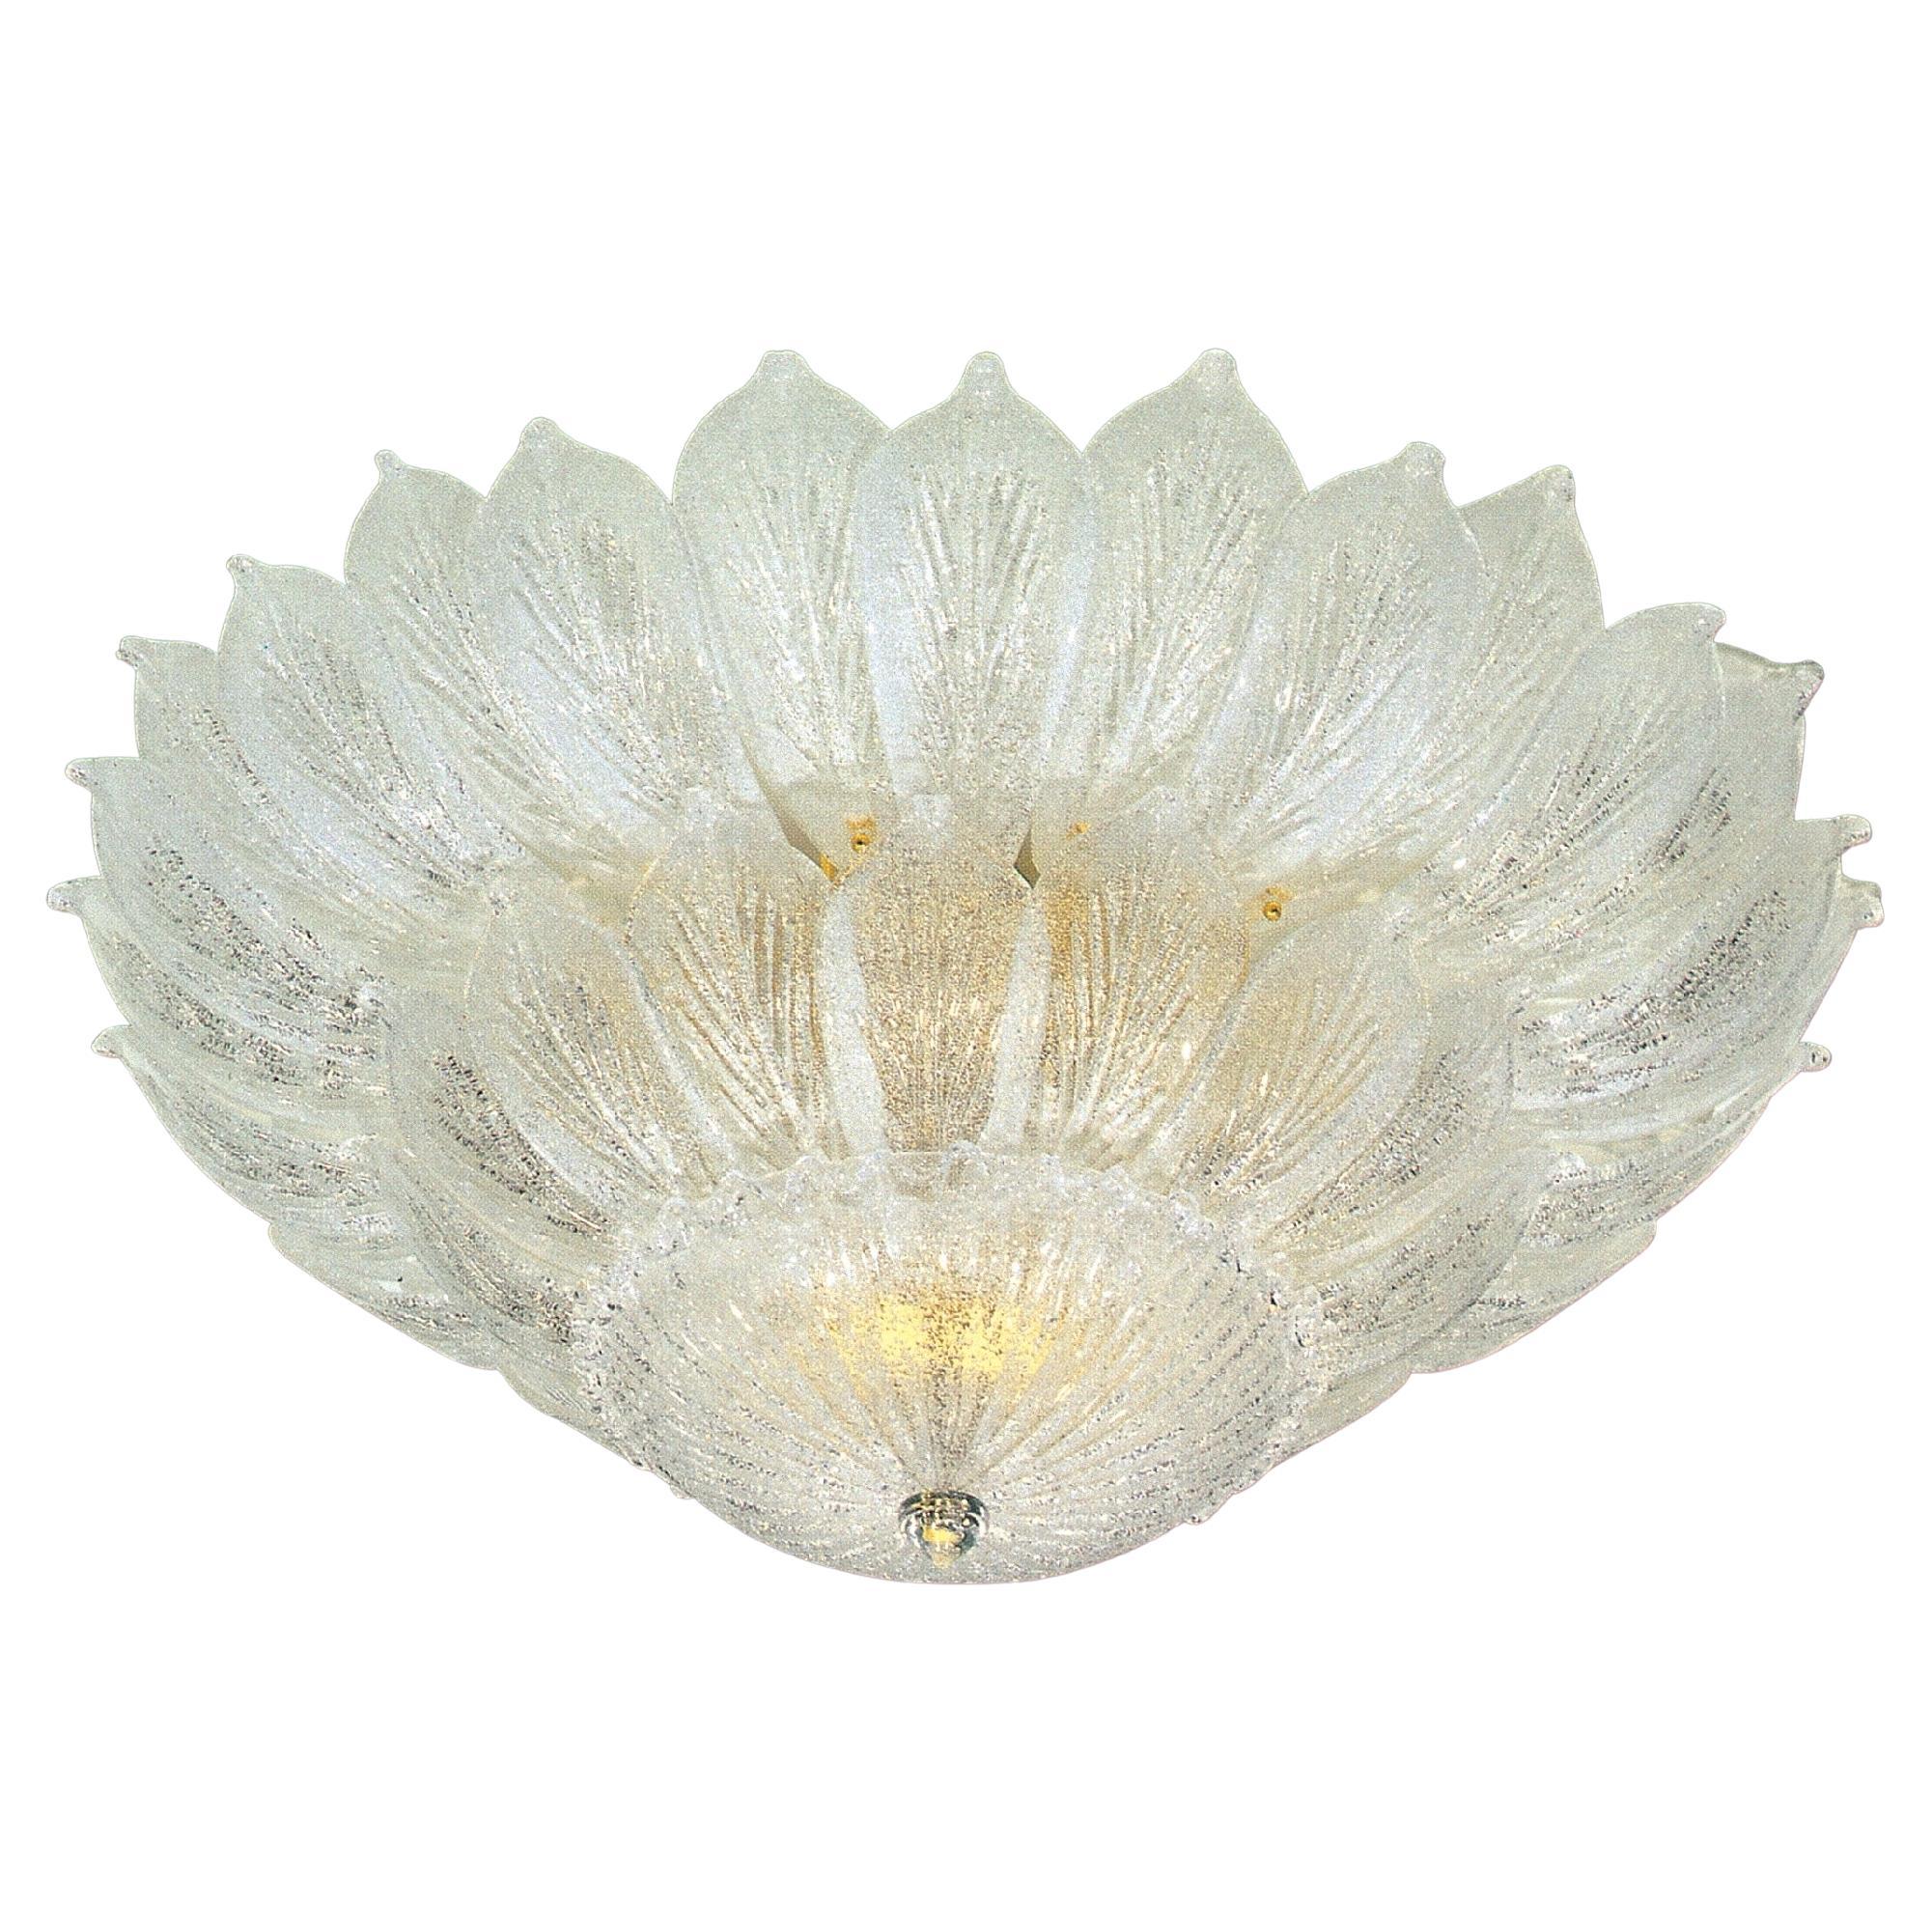 Italian Leaves Murano Glass Ceiling Light or Flush Mount For Sale